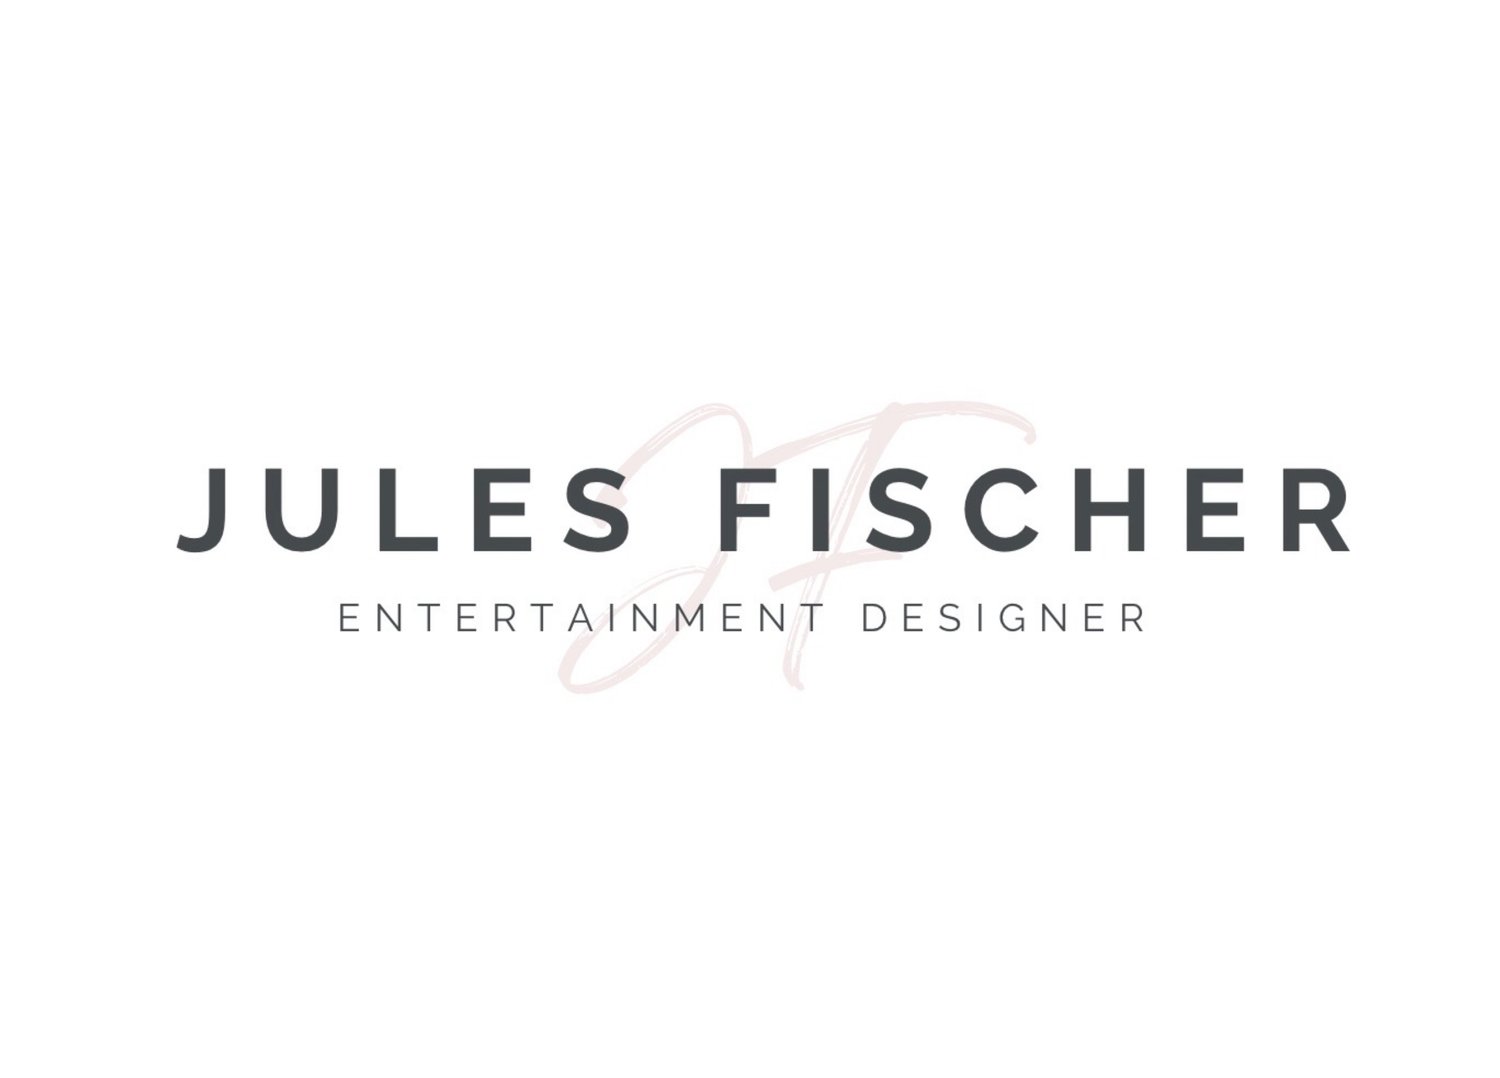 JULES FISCHER